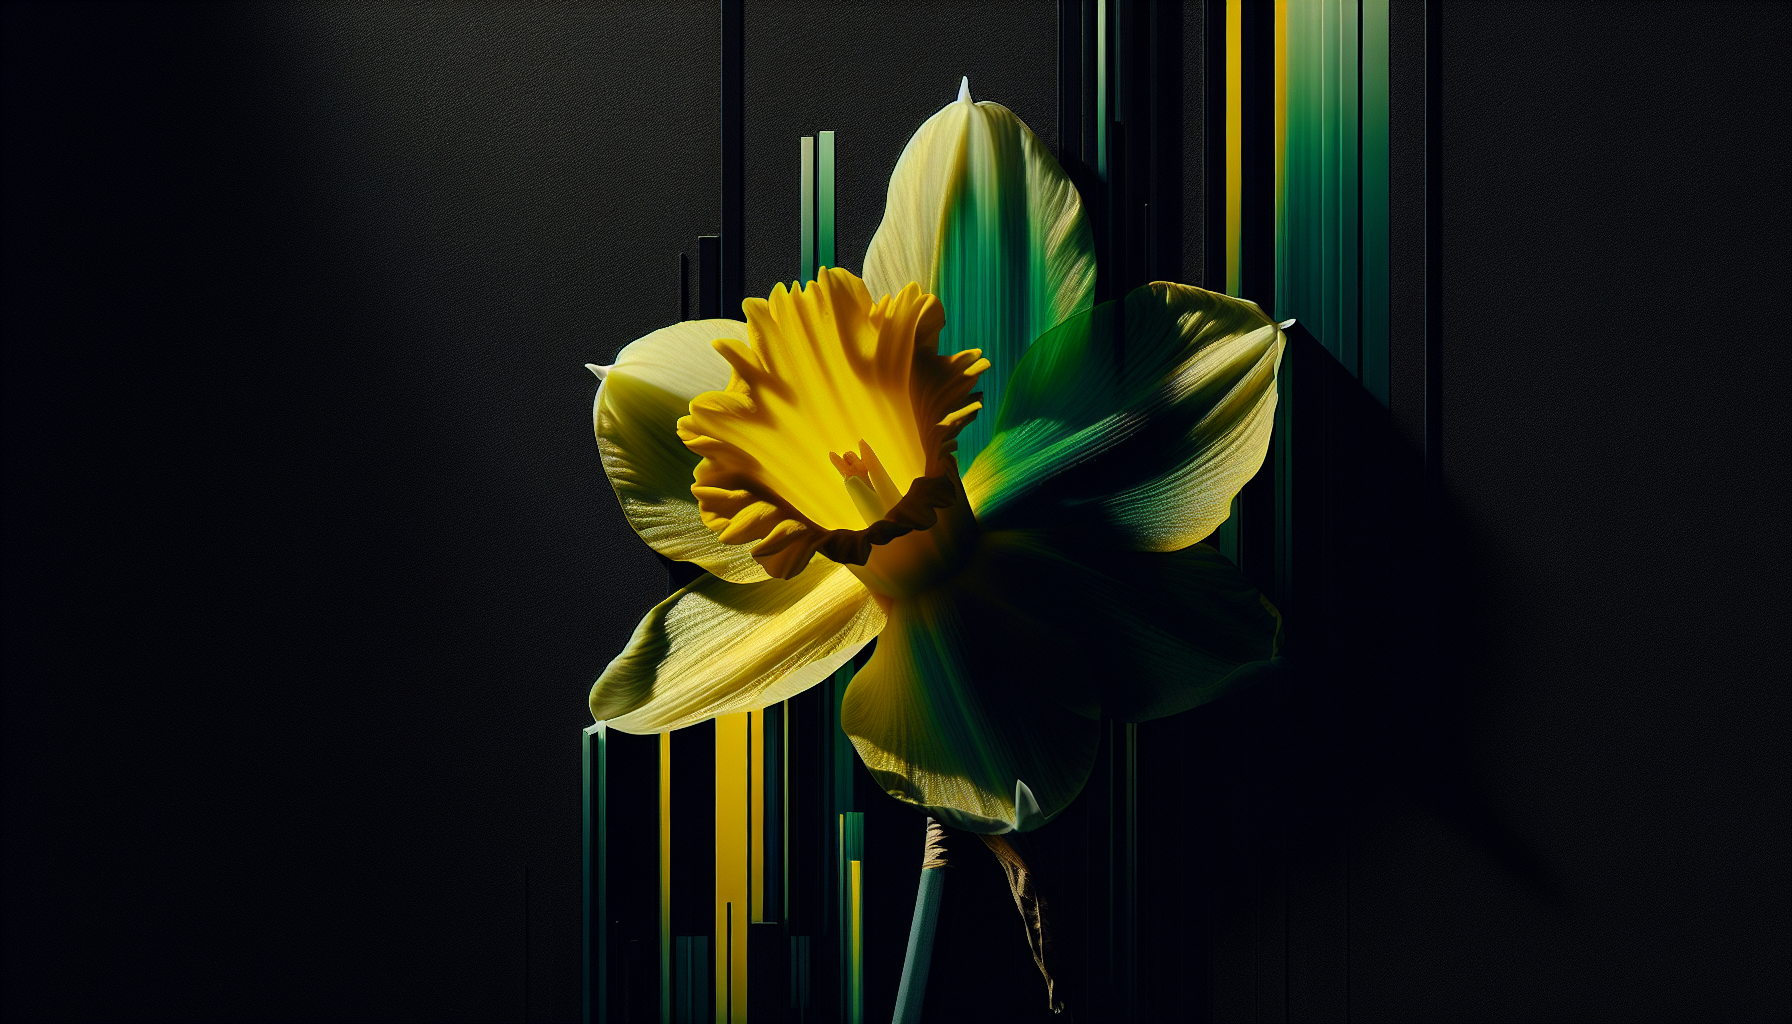 Sunlit yellow daffodil